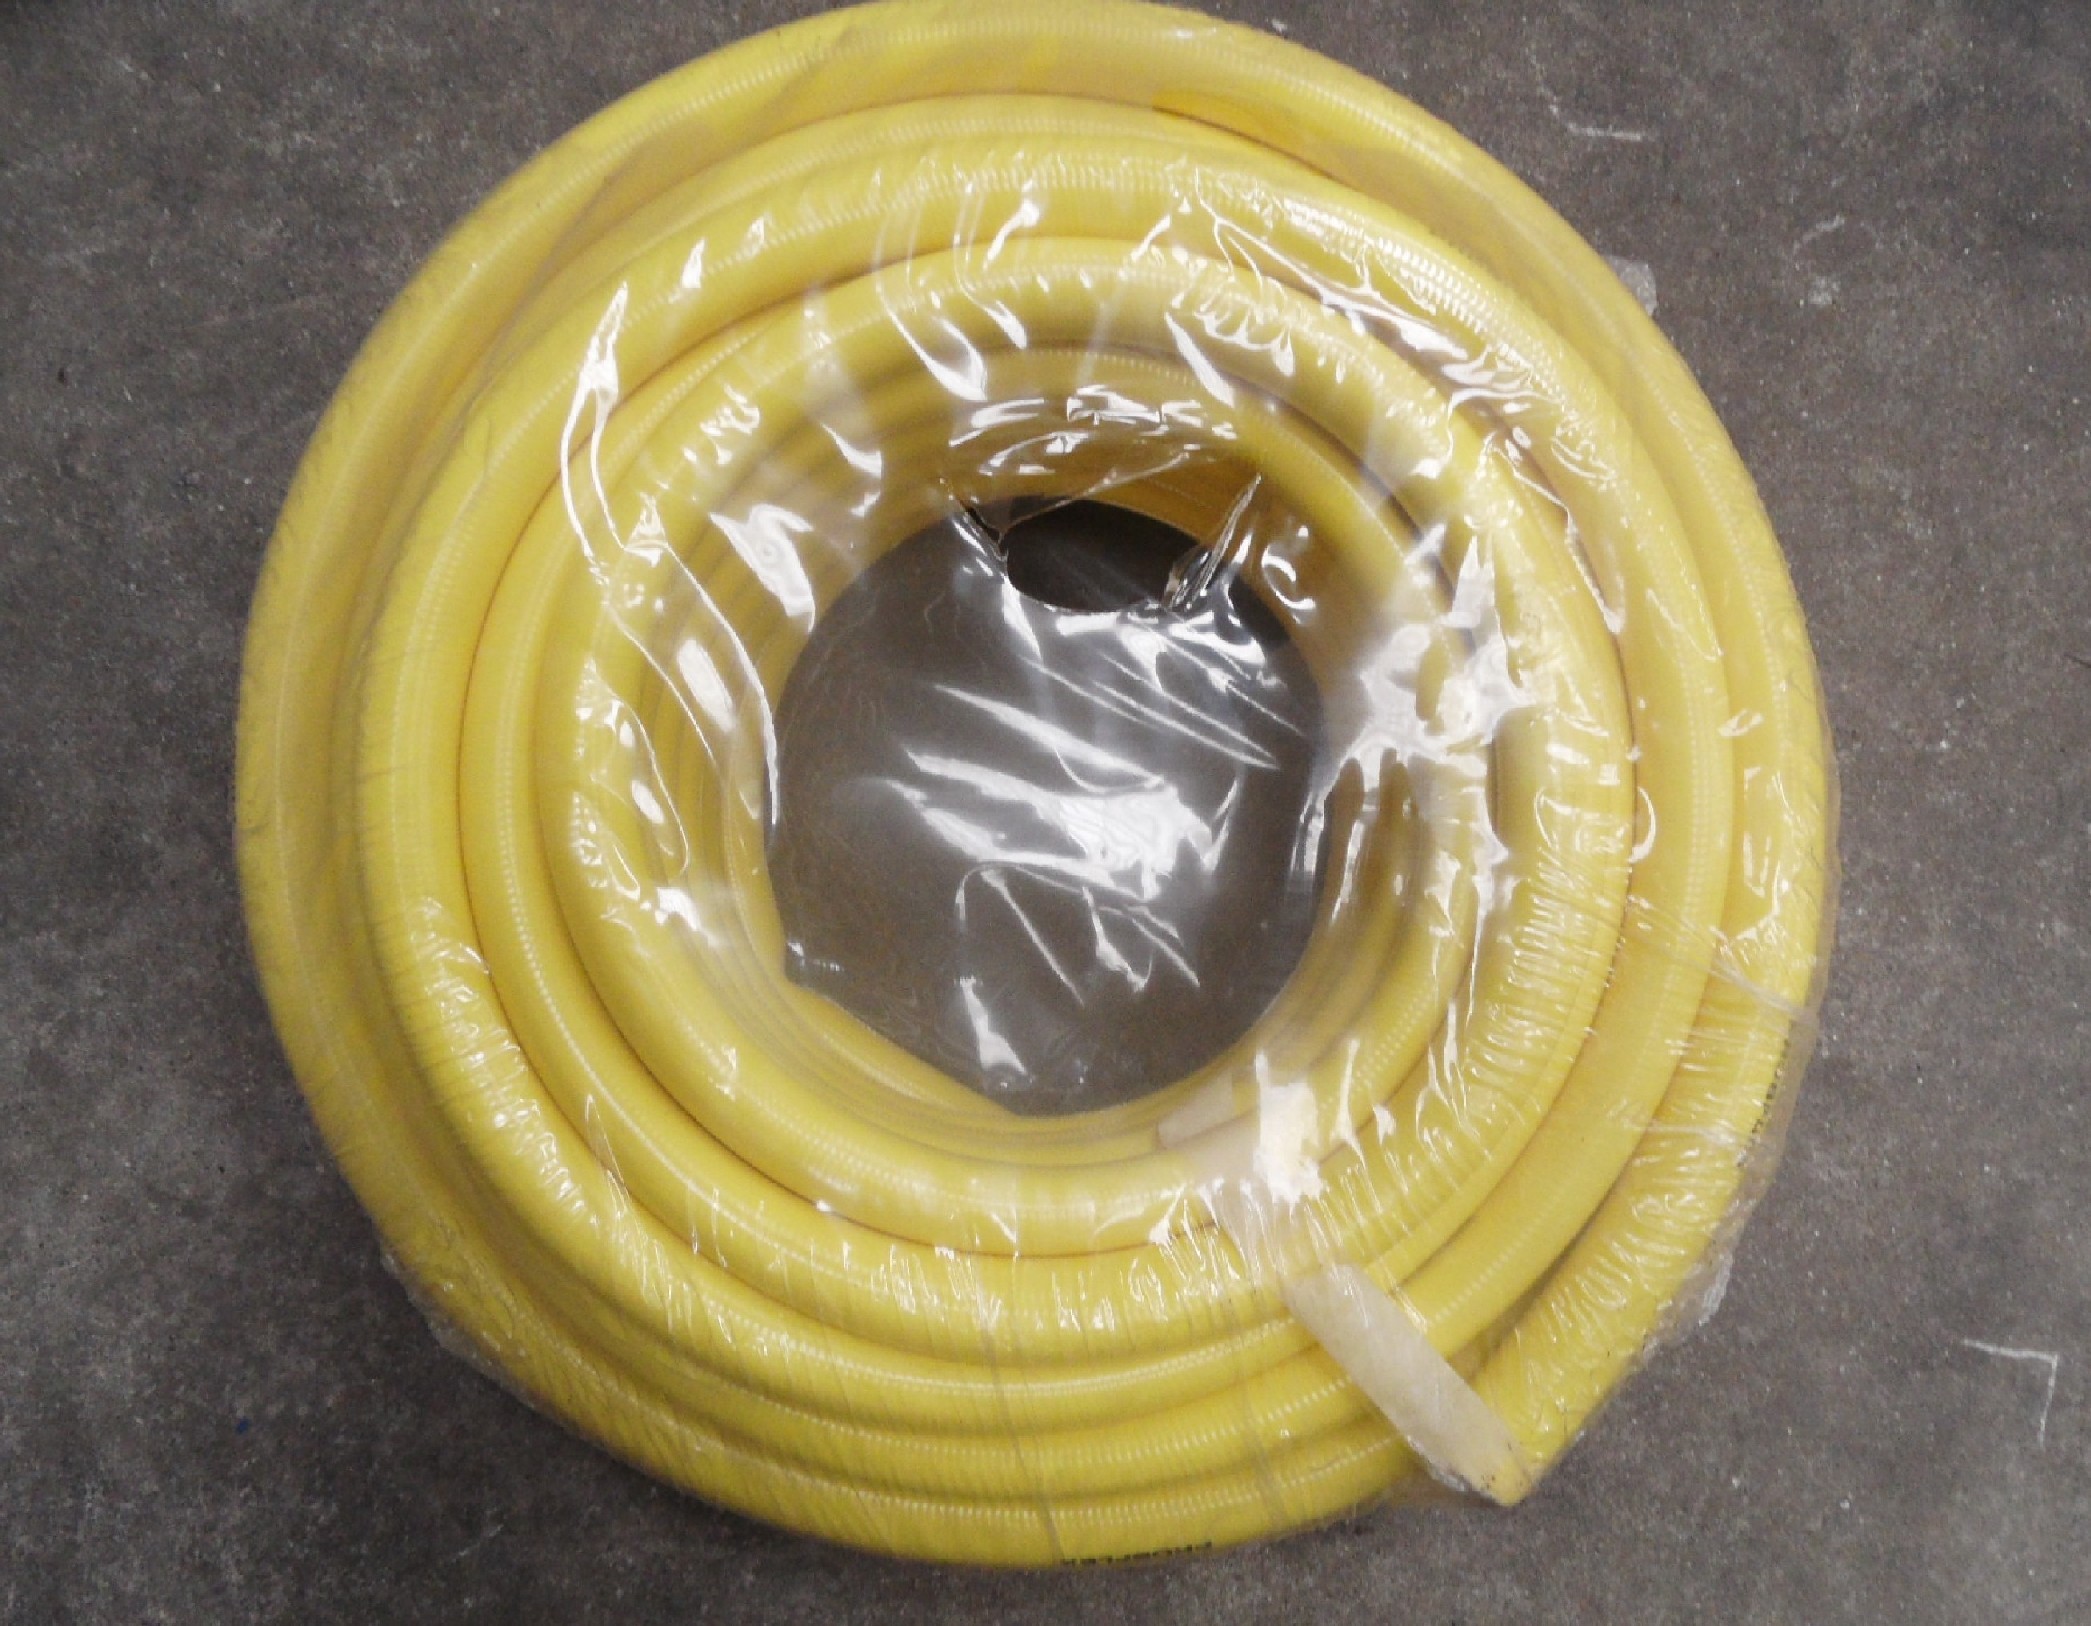 Tuyau d'arrosage Tubiroll tricoté antivrille jaune 25m diam 25mm